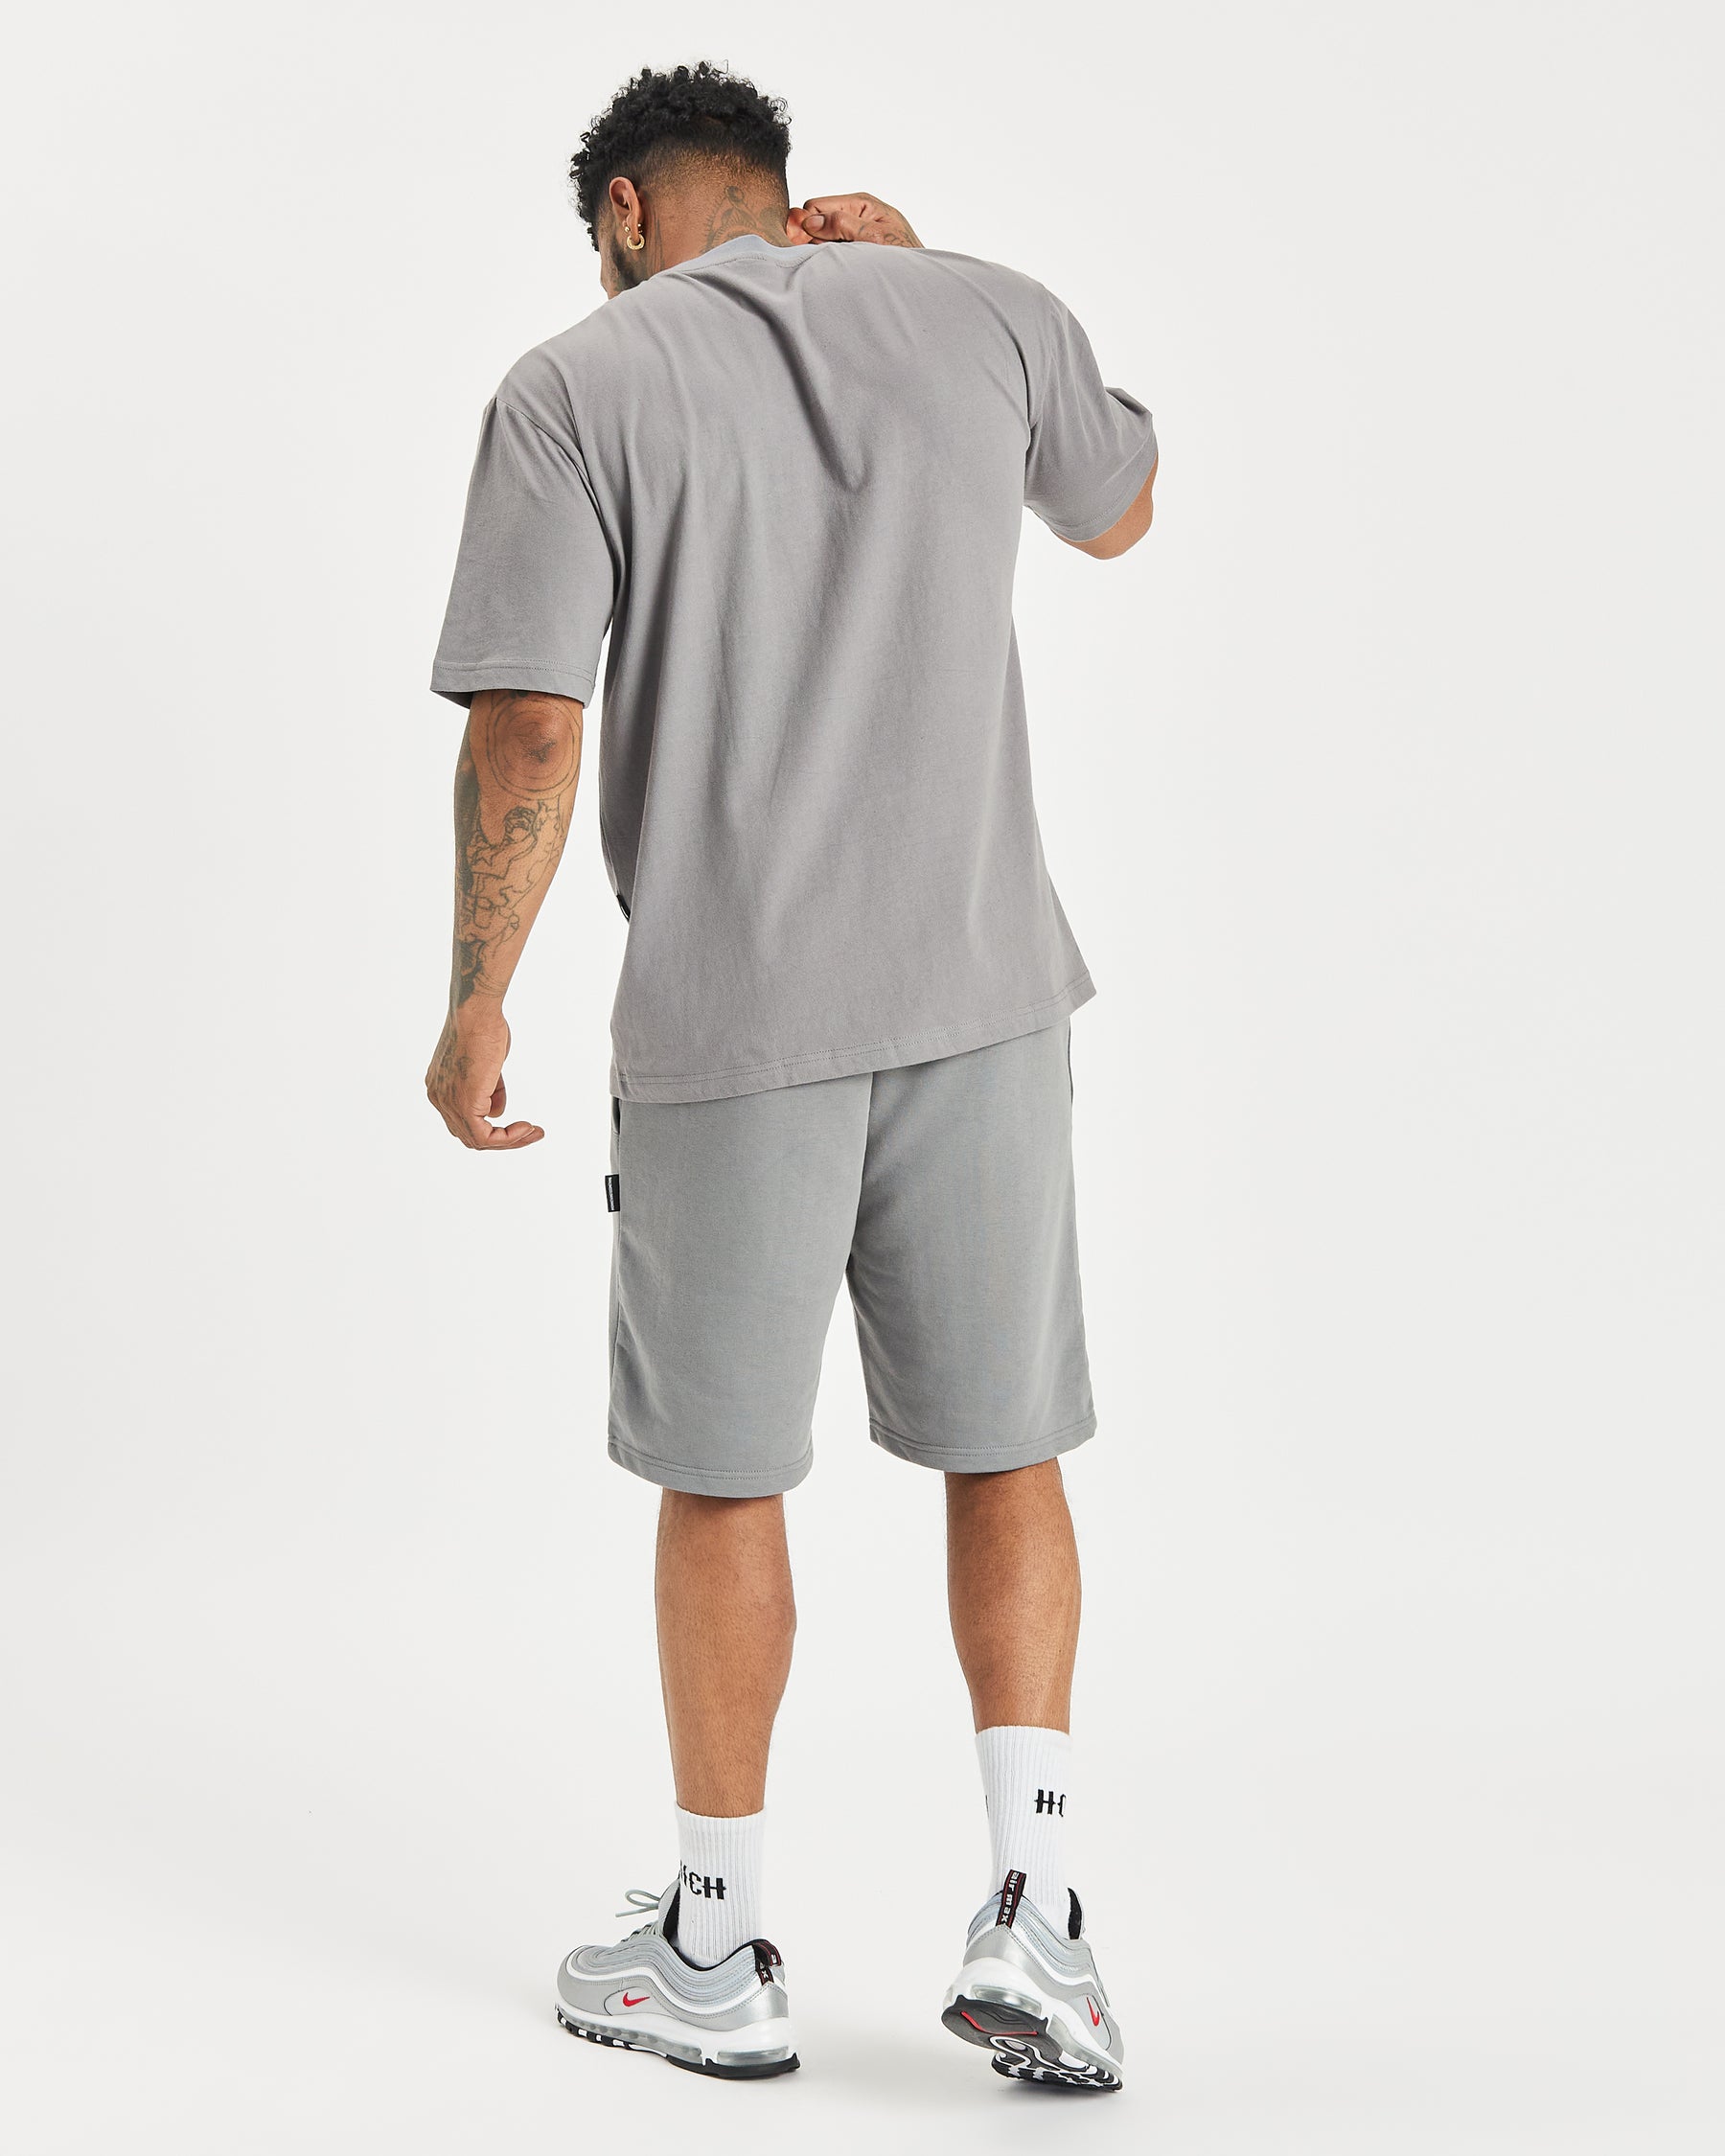 OG Kraze Shorts - Grey/Amber